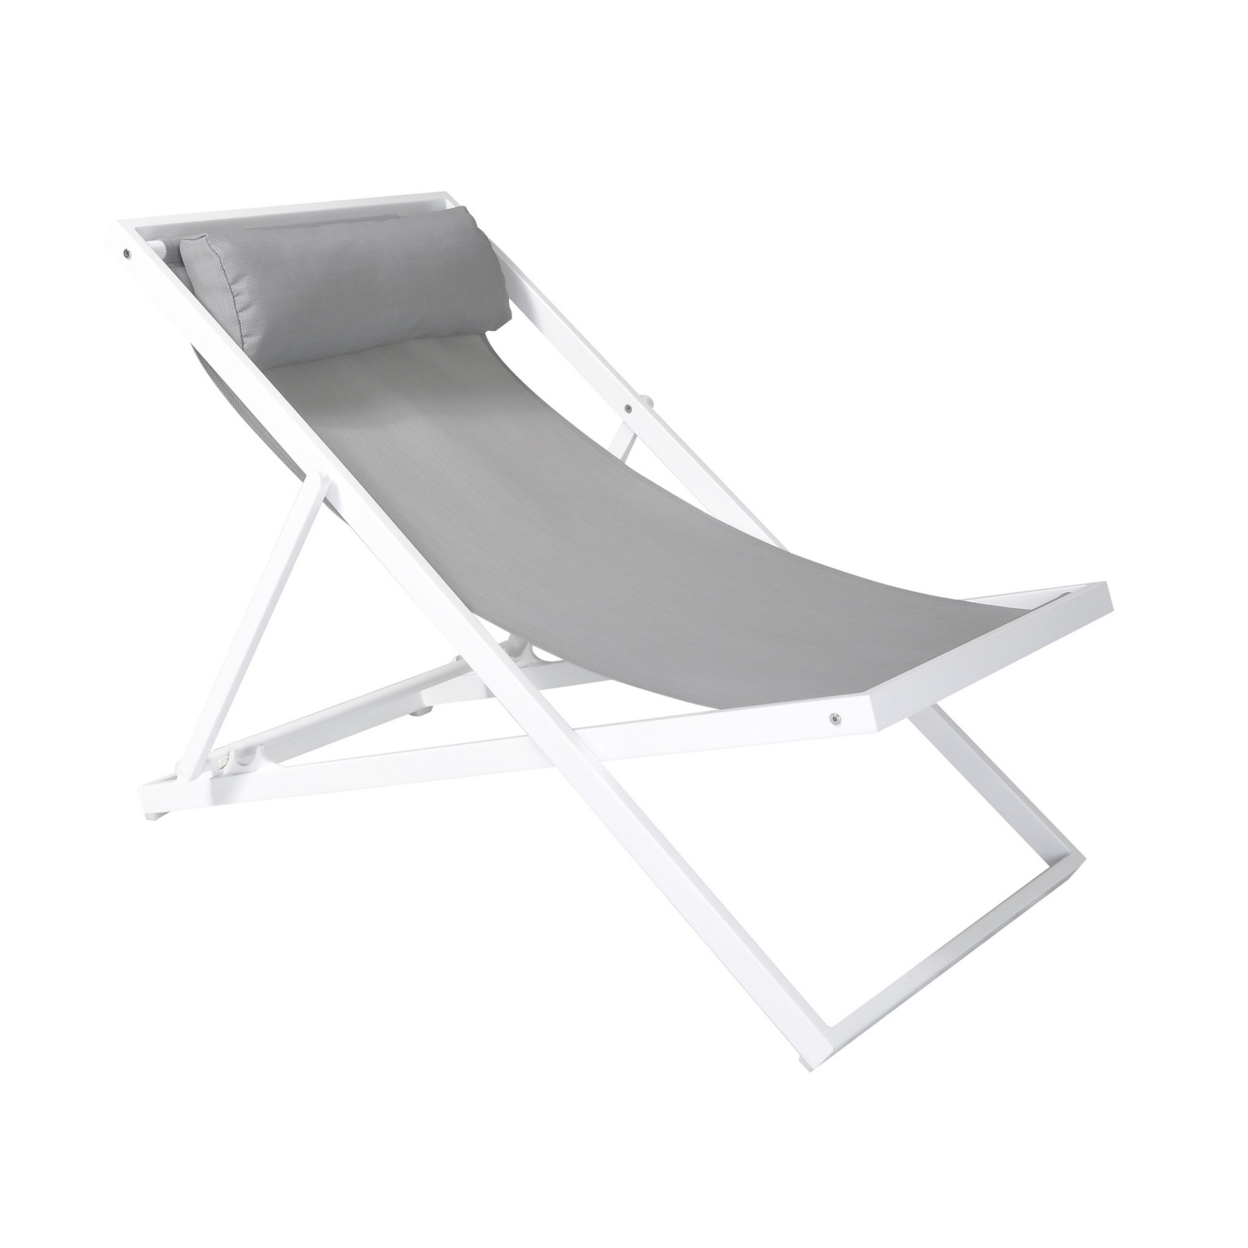 Textilene Upholstered Deck Chair With Padded Headrest, White- Saltoro Sherpi